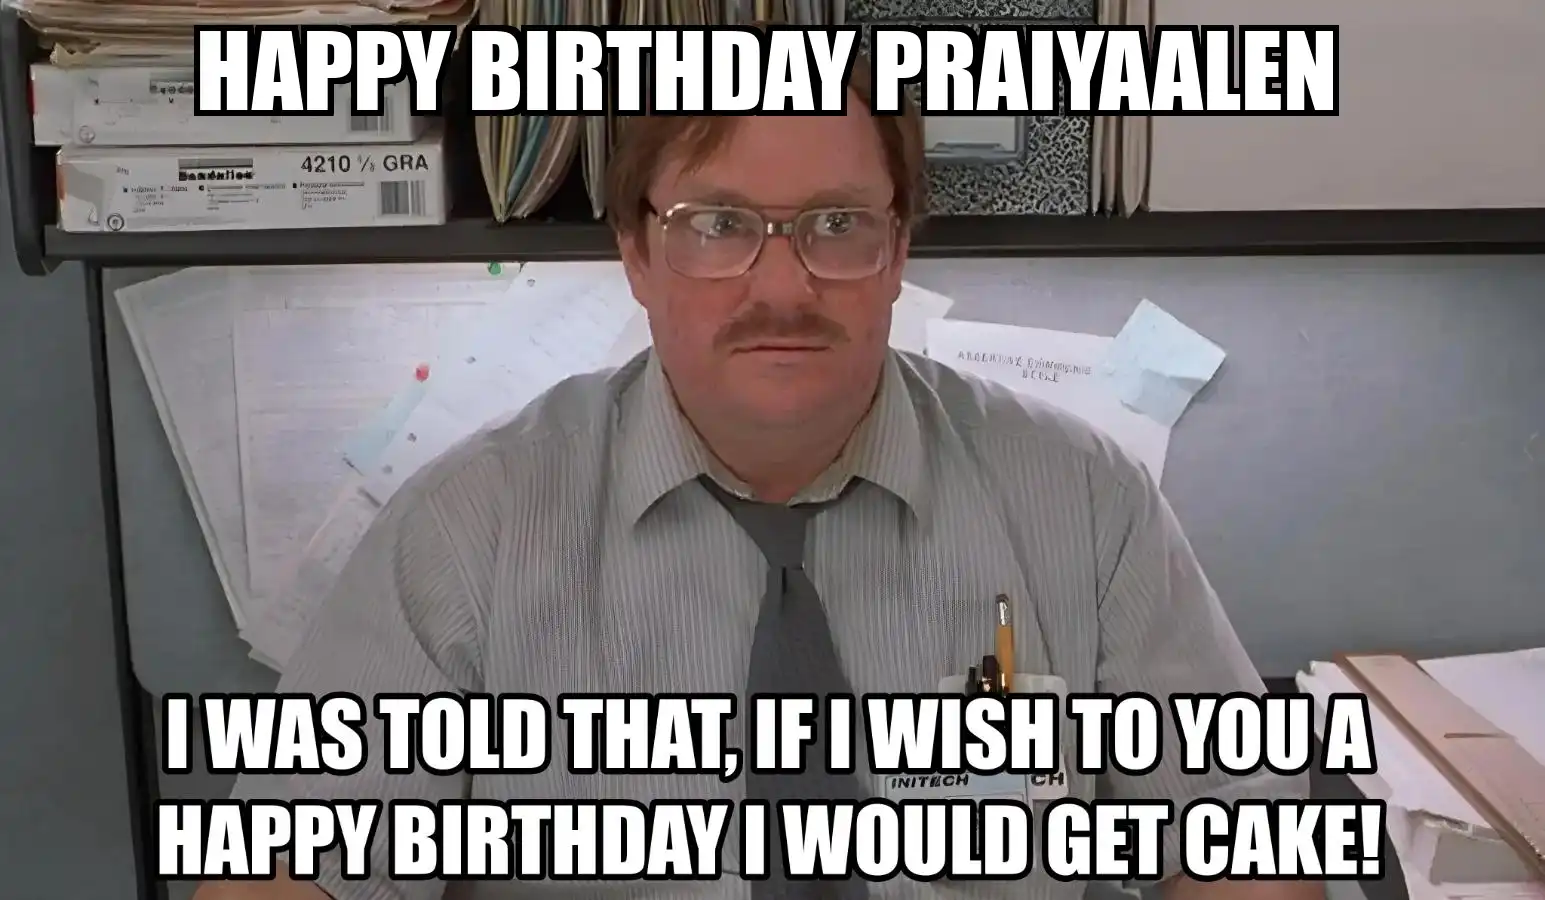 Happy Birthday Praiyaalen I Would Get A Cake Meme